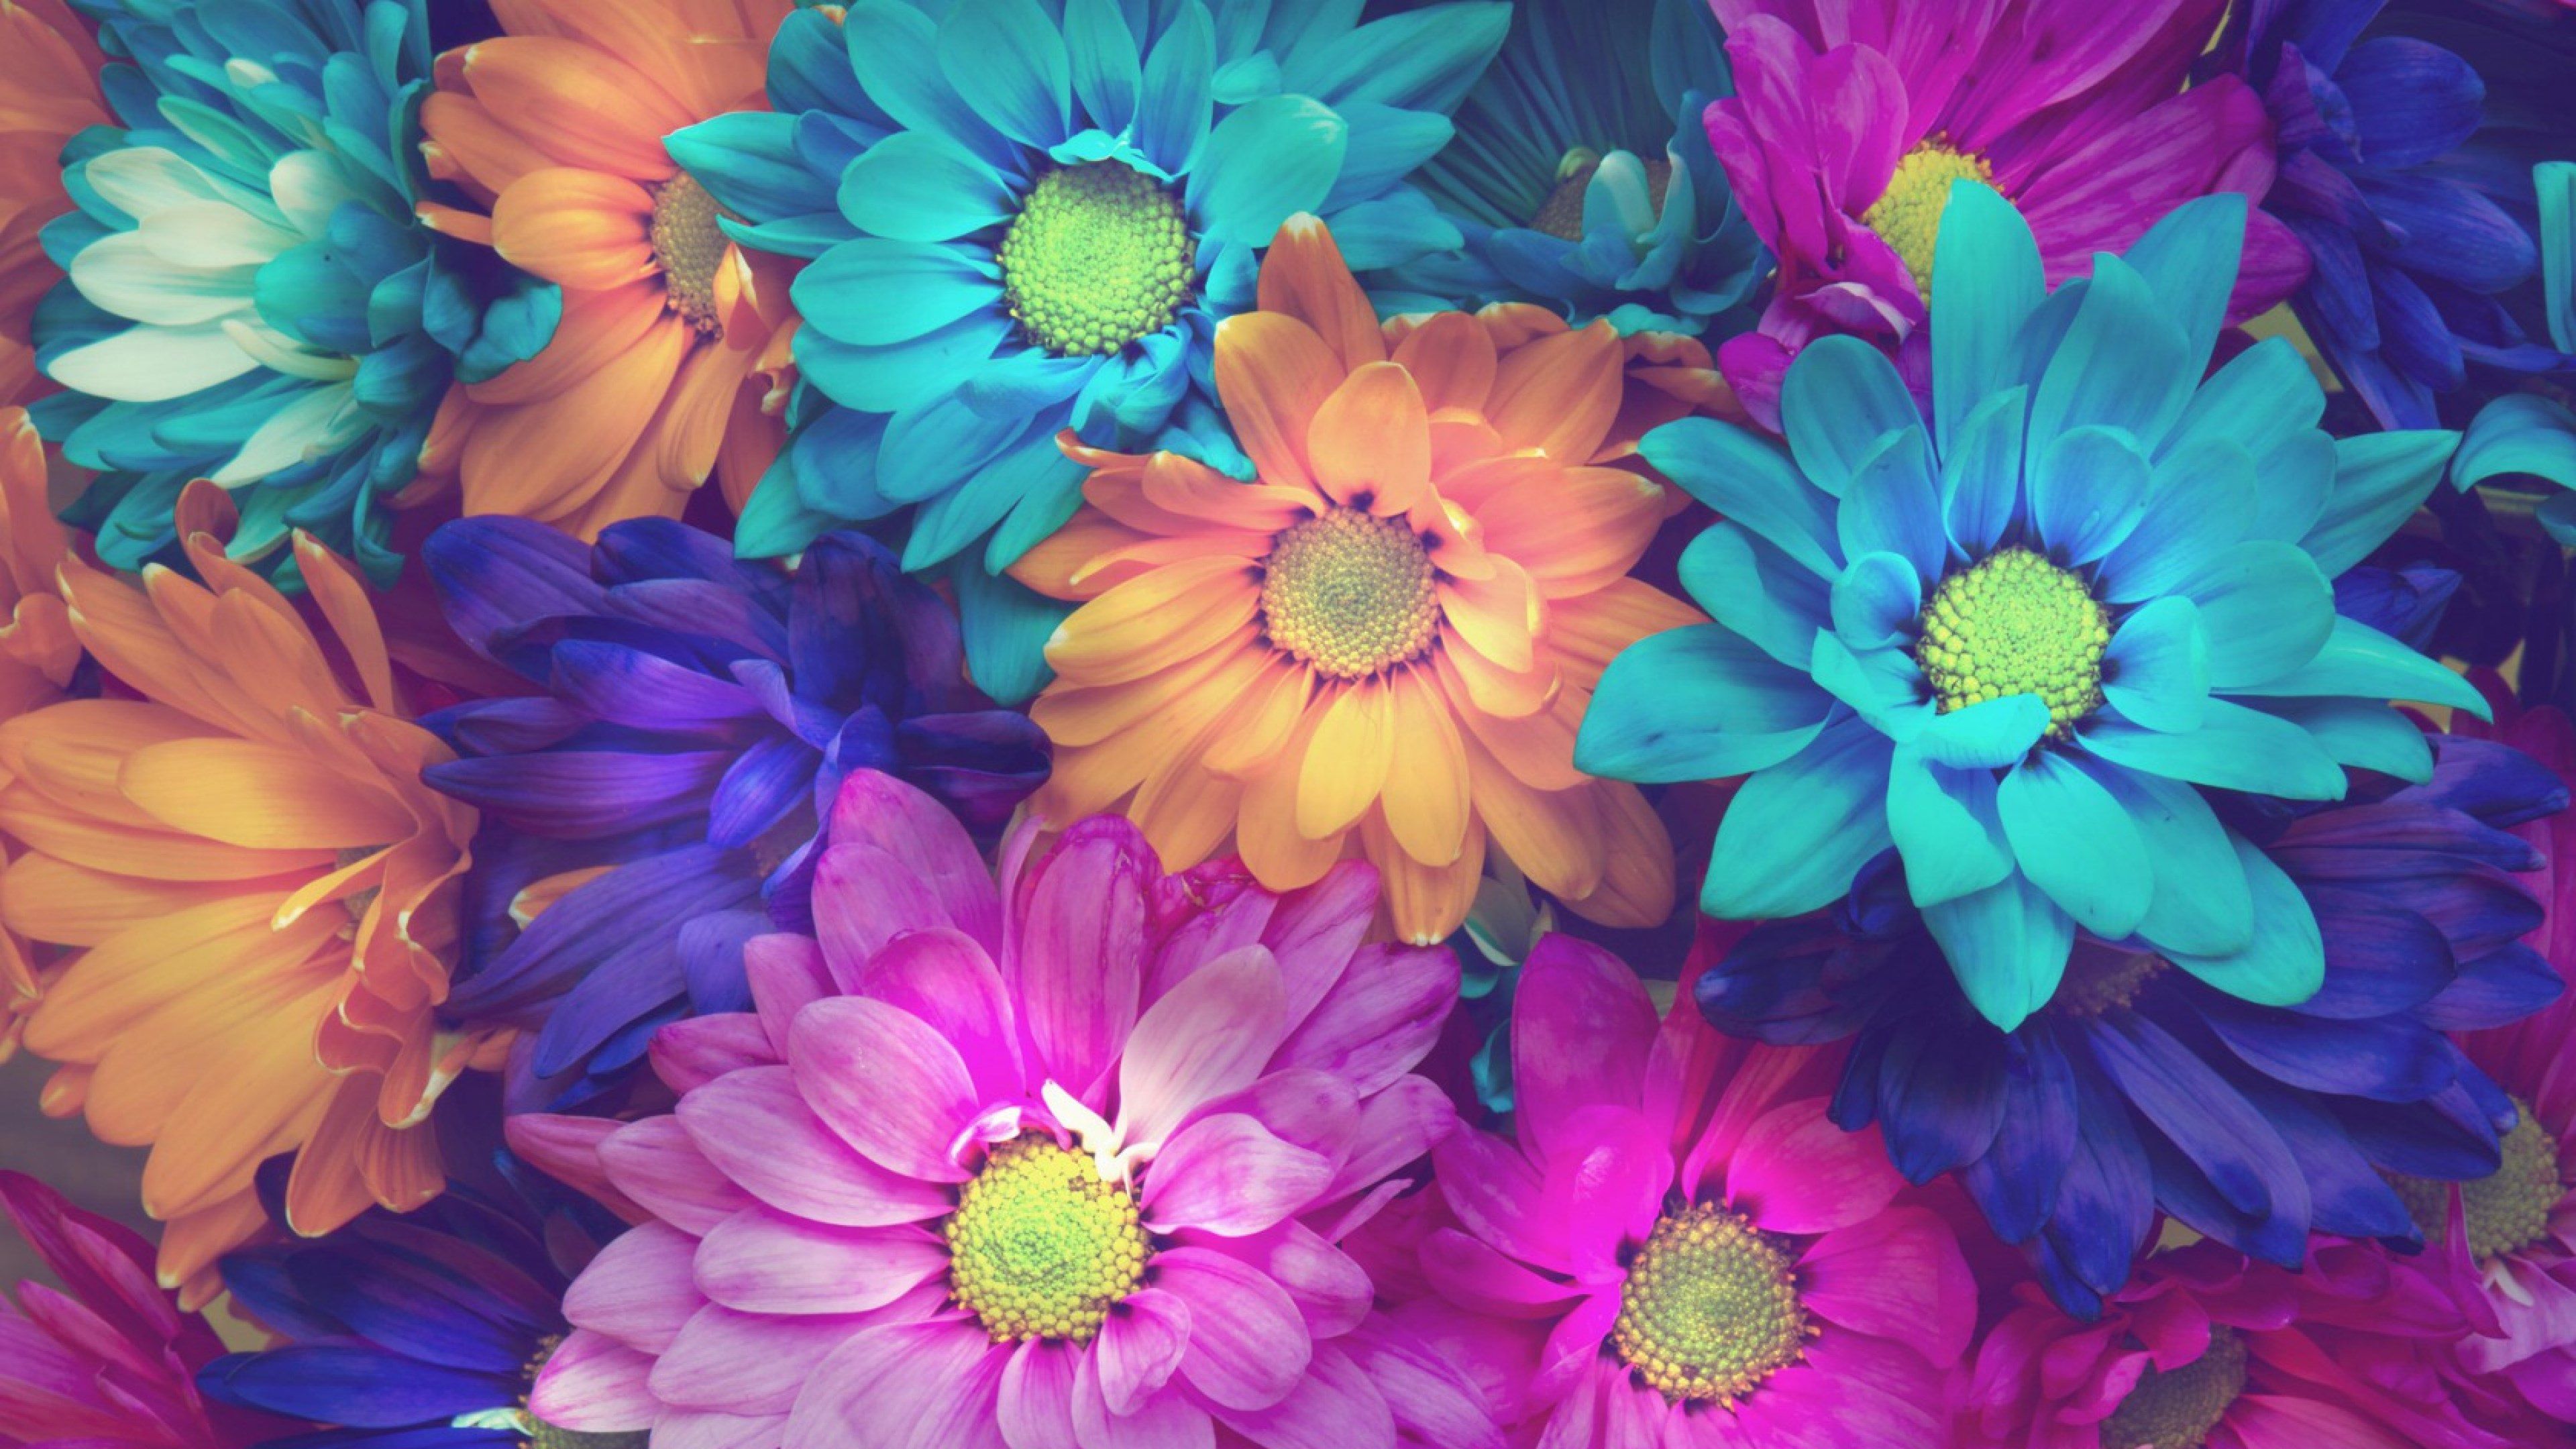 flowers 4k free download of HD wallpaper. Flower wallpaper, Pink wallpaper iphone, Colorful flowers